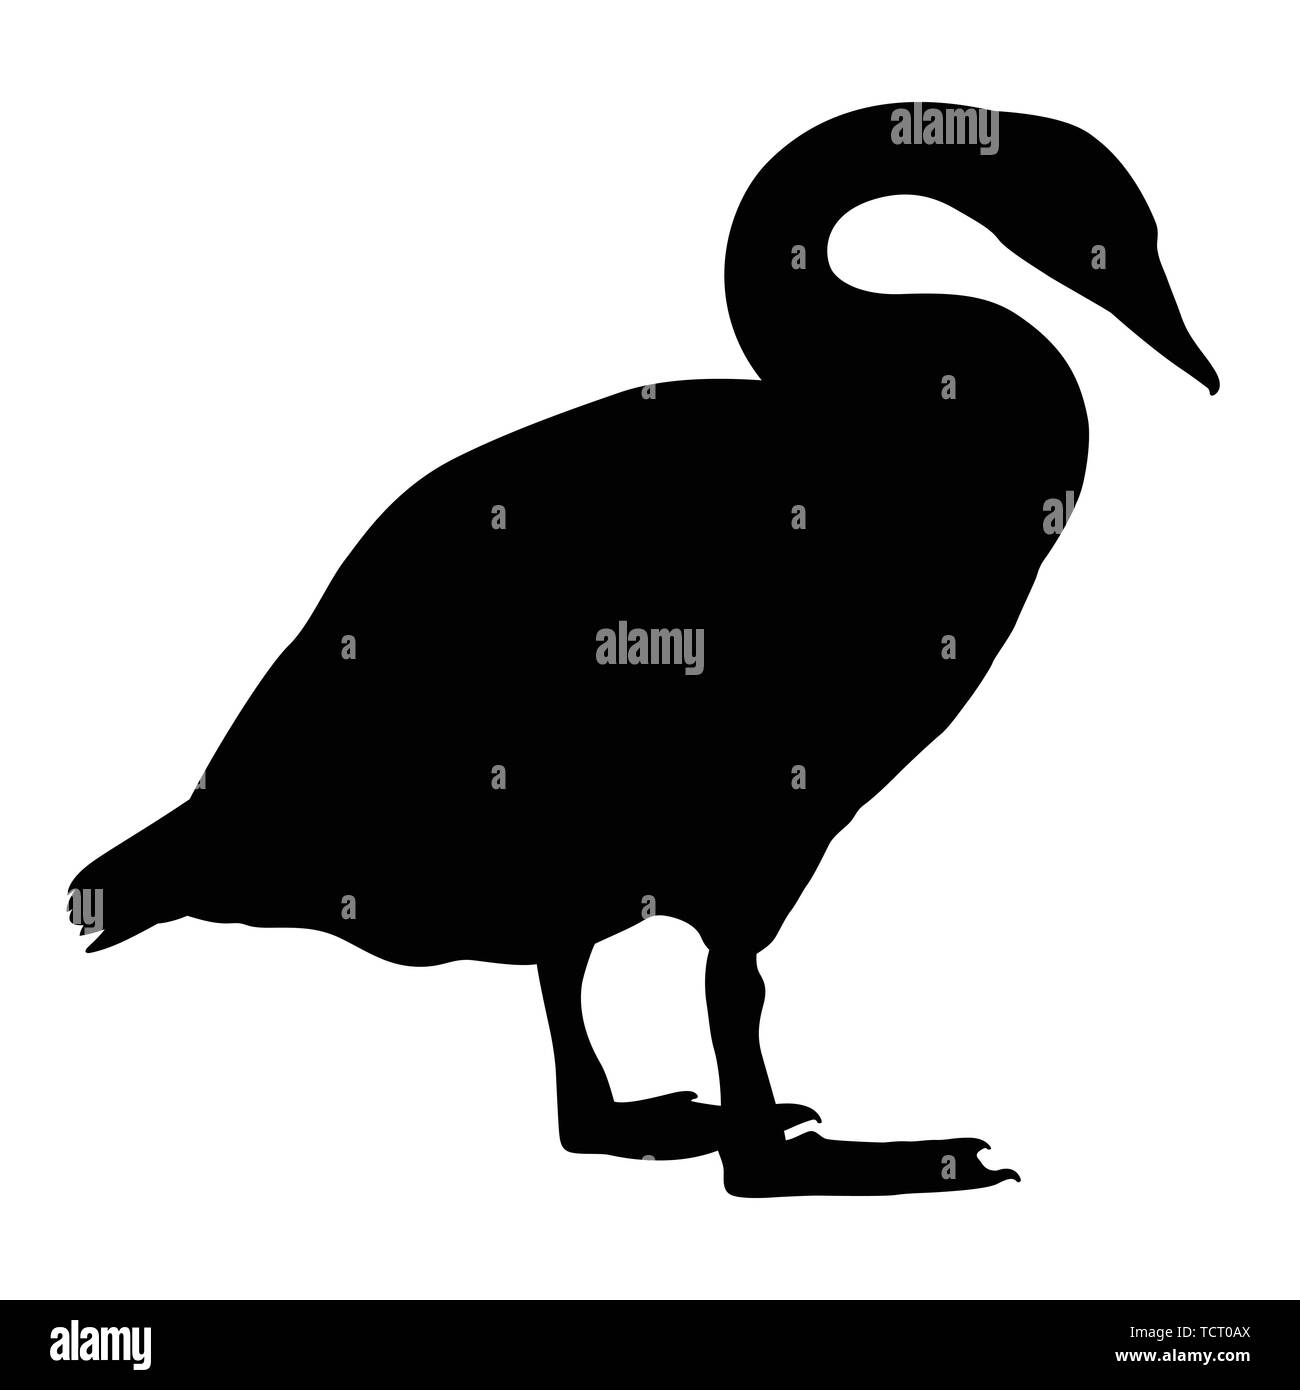 Swan vektor Silhouette. Ente, Schwan, Gans schwarz und weiß Abbildung: Stock Vektor